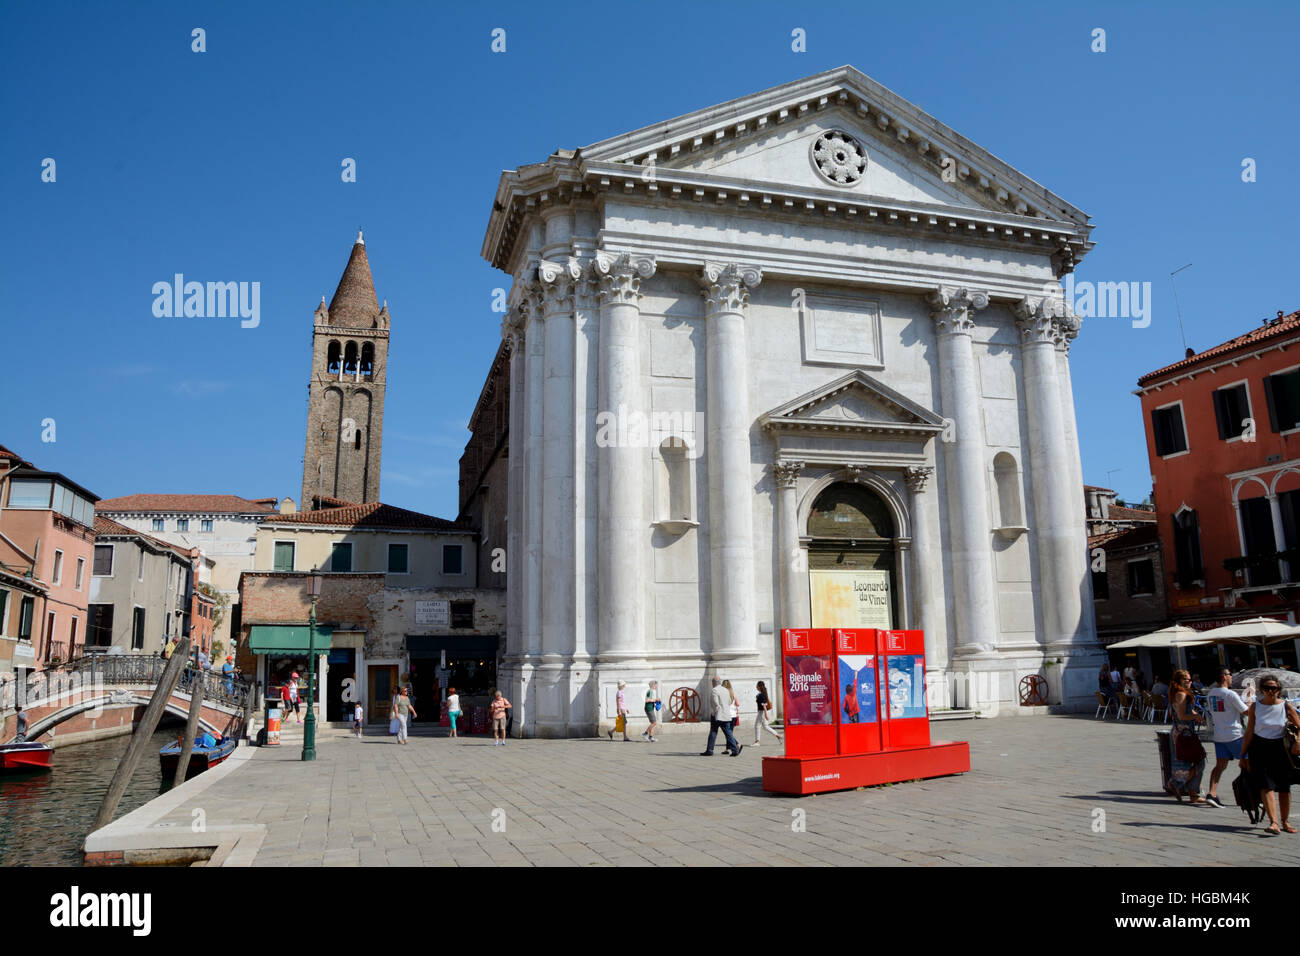 Venise, Italie - 9 septembre 2016 : Chiesa di San Barnaba église catholique de Venise, en Italie. Des personnes non identifiées, visible. Banque D'Images